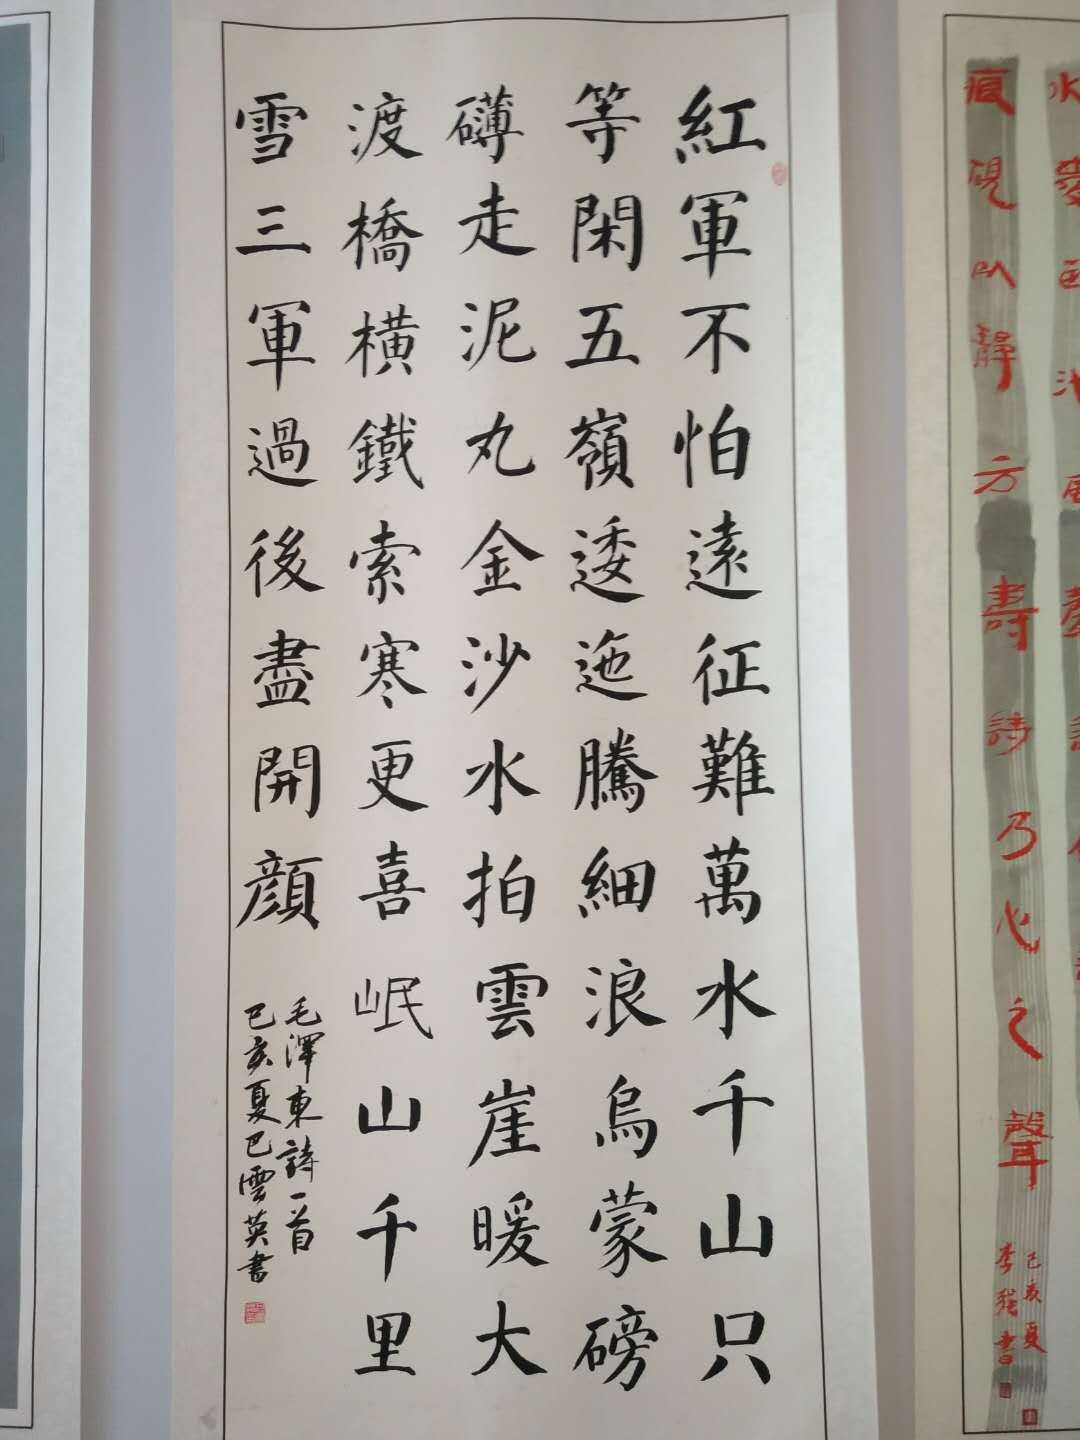 郸城县"守初心,颂党恩"大型书法展-展览作品-画廊展览